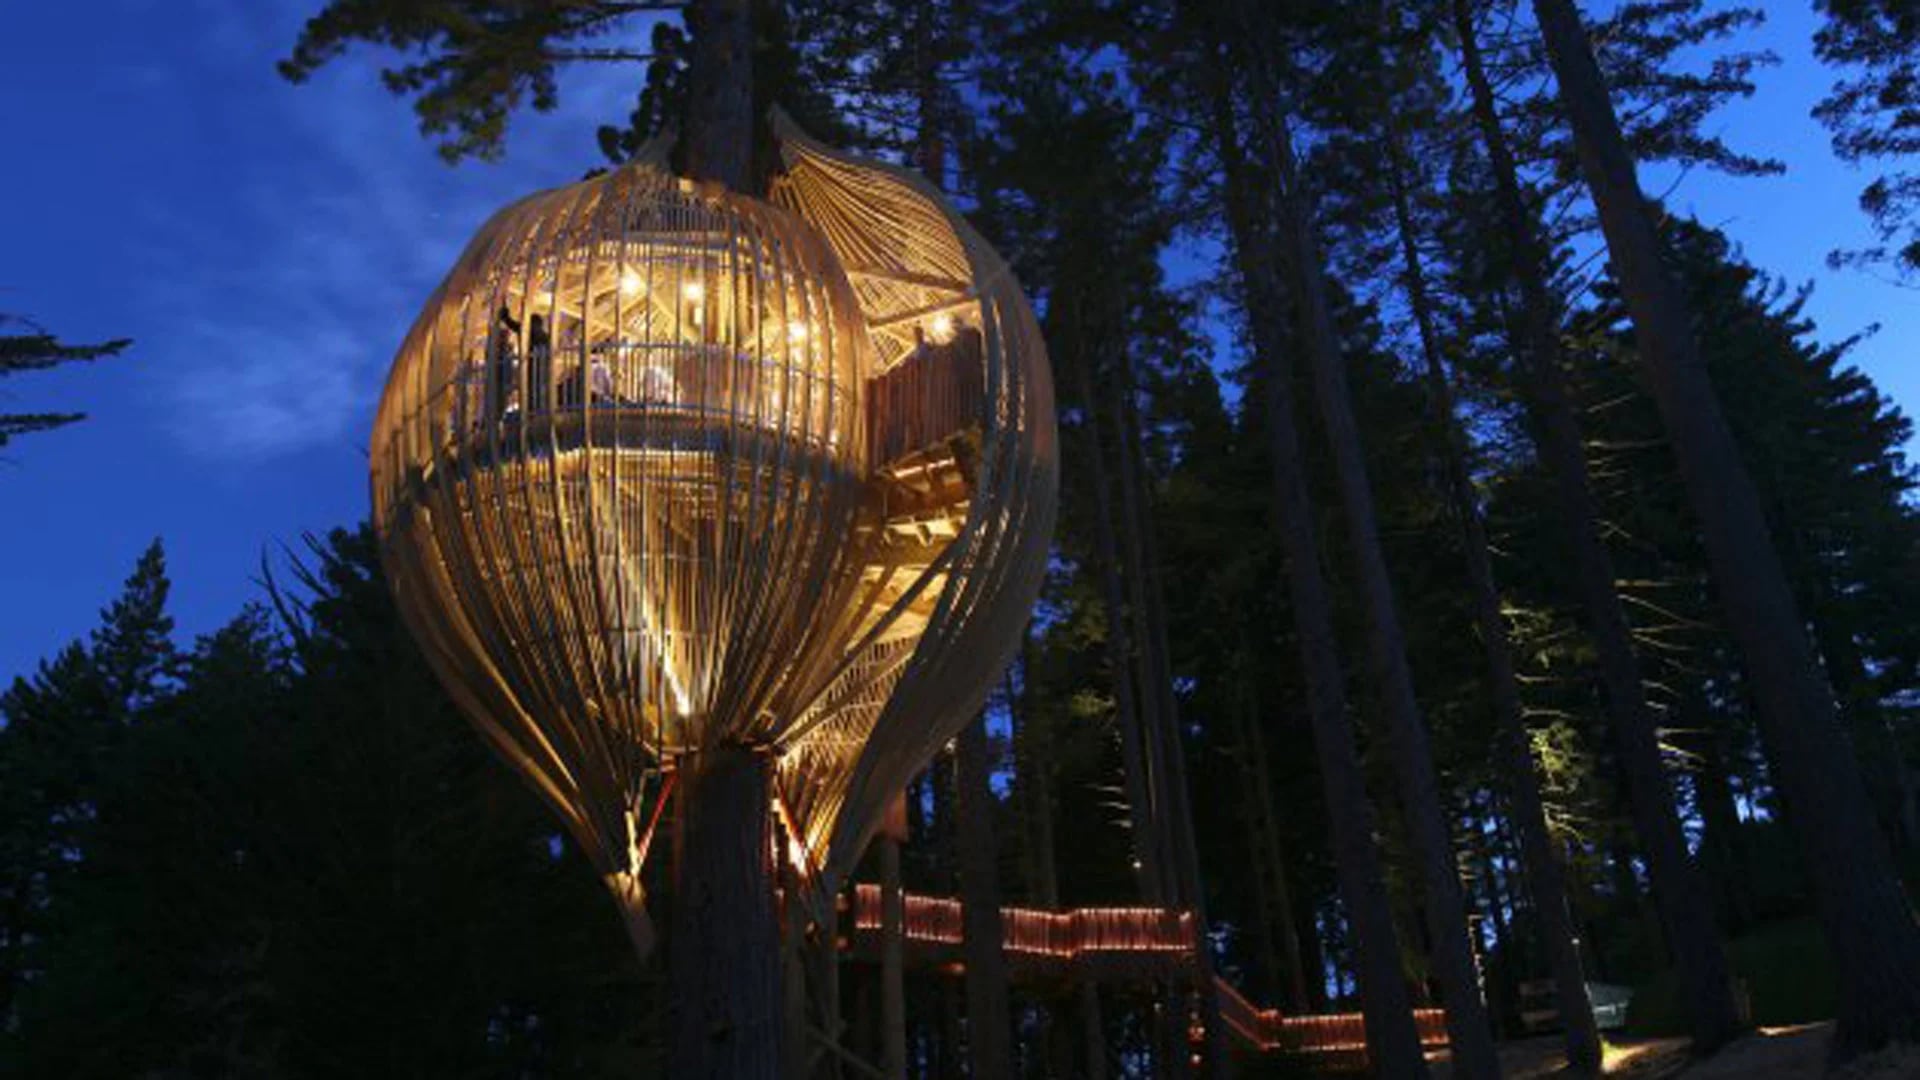 Ubicada en un bosque y sostenida a 30 metros del suelo, solo tiene lugar para 18 invitados ( Página oficial)